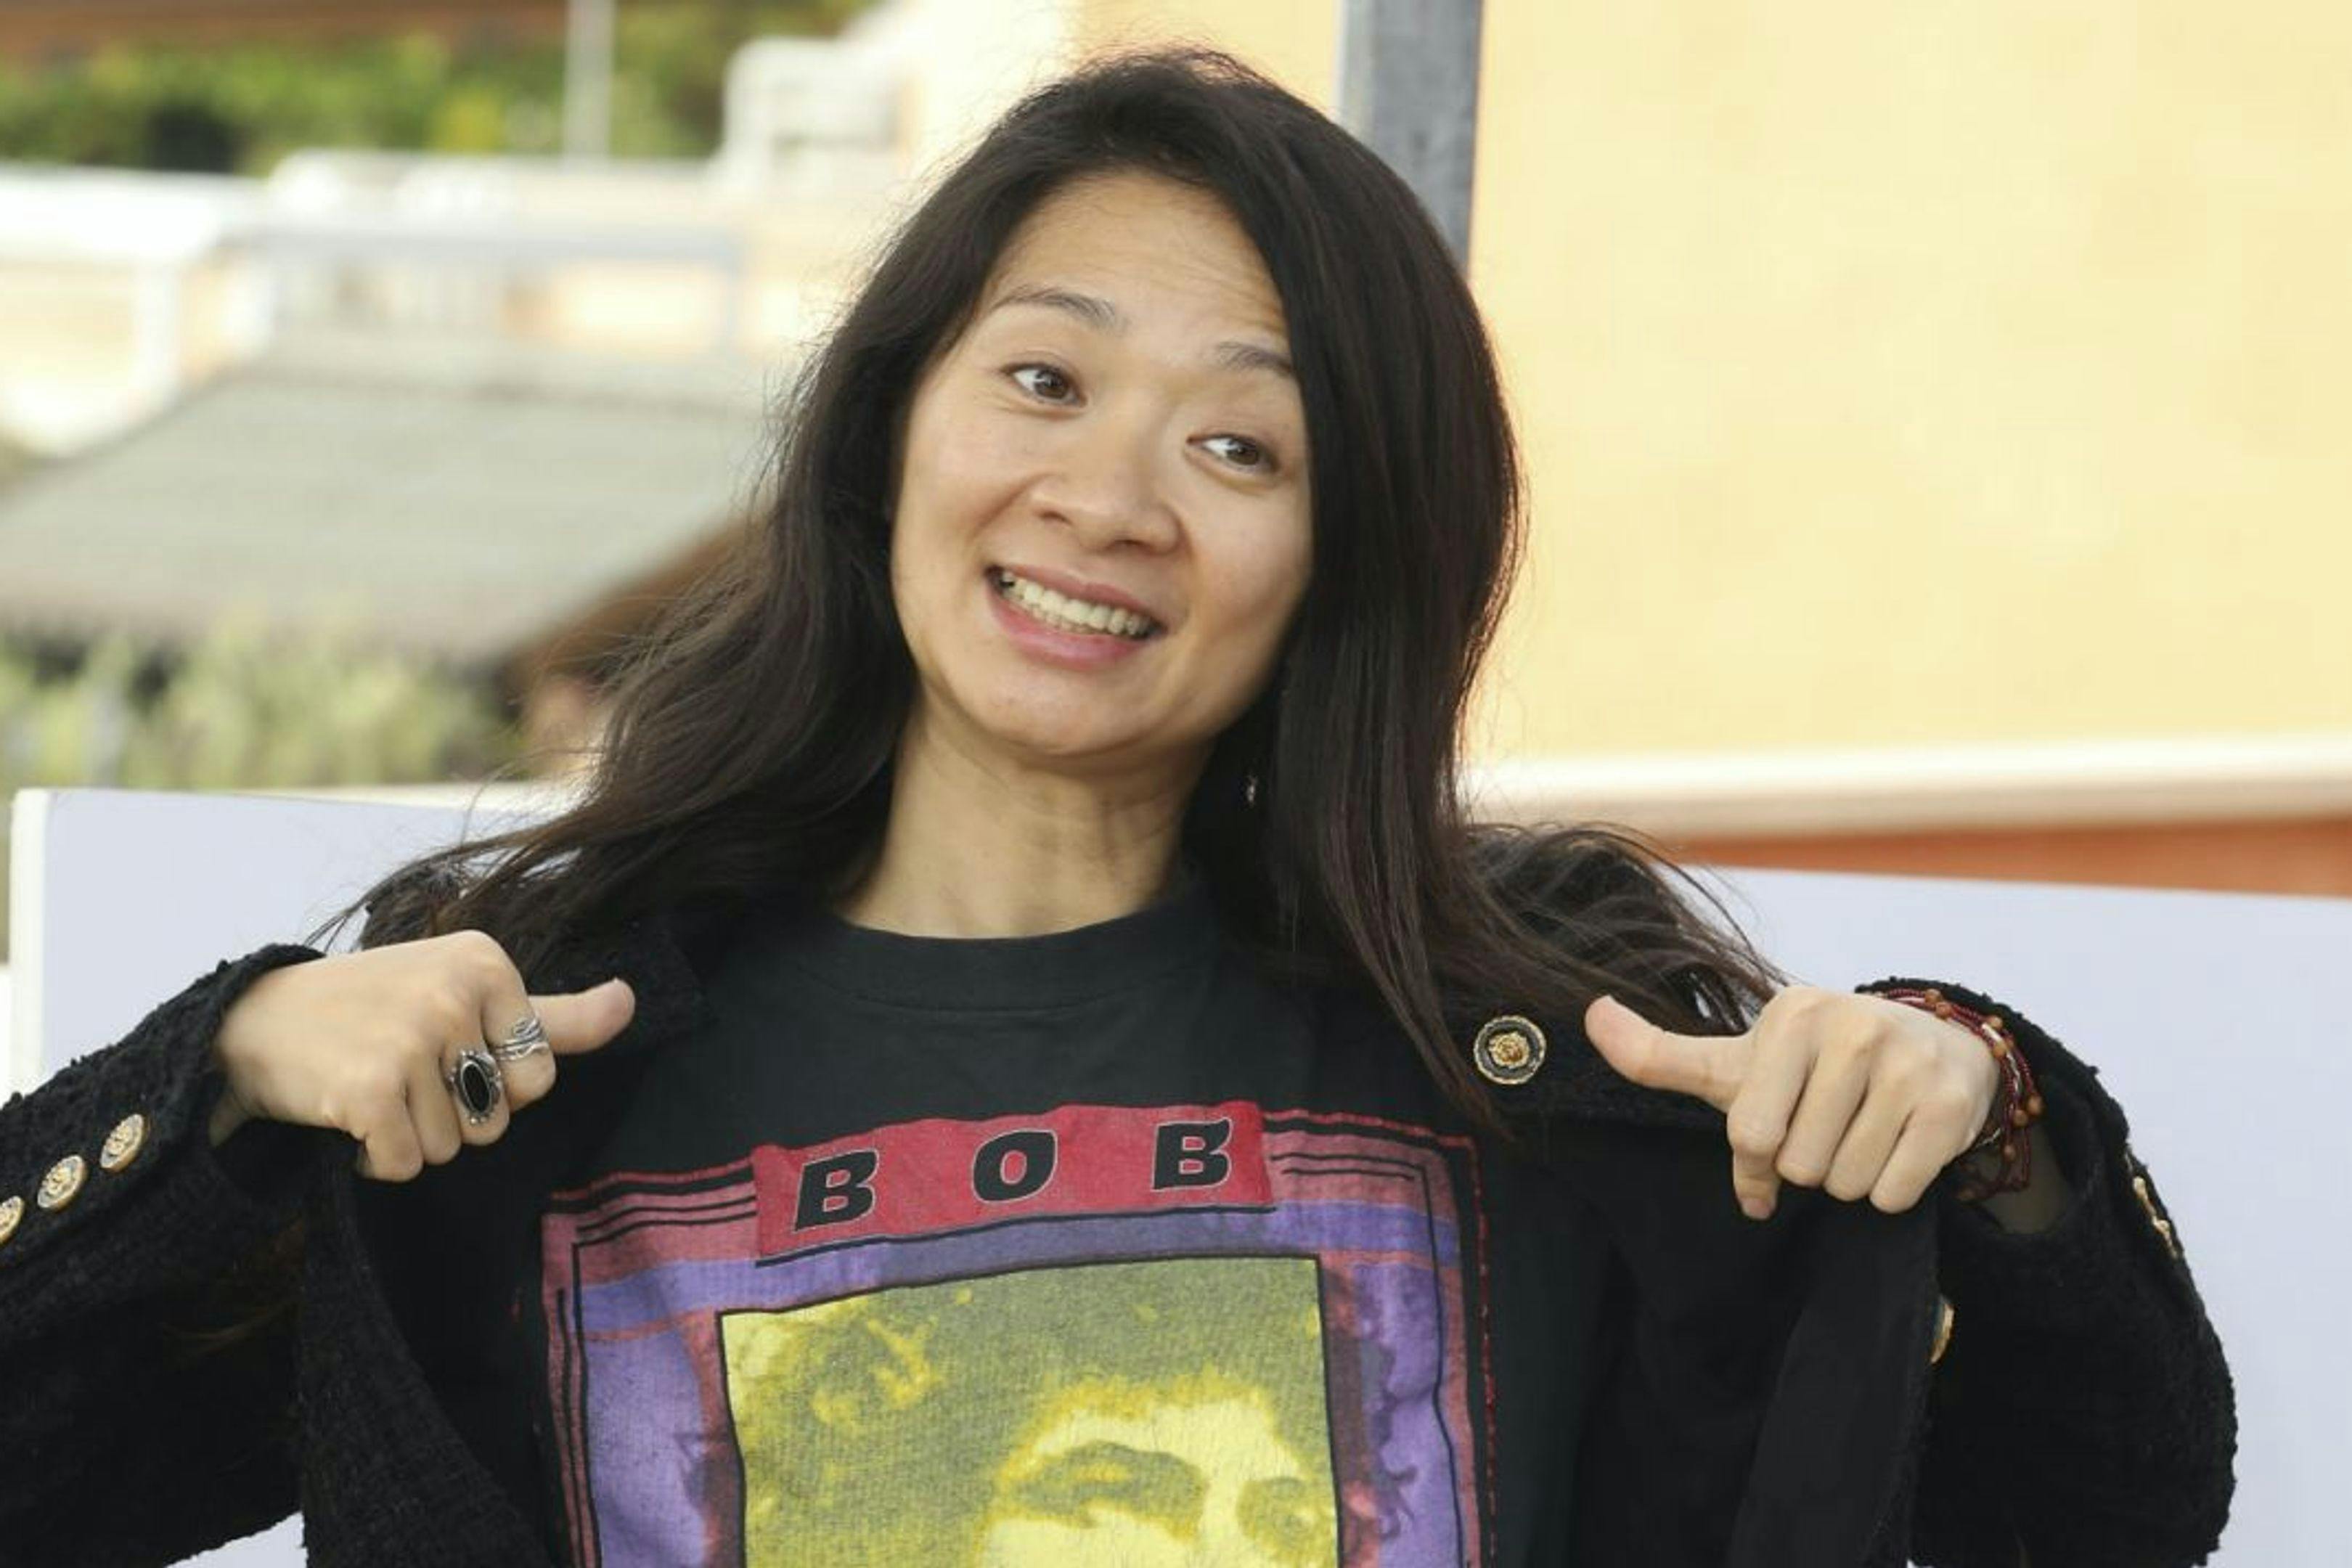 La directora Chloé Zhao, durante la promoción de 'Eternals'.